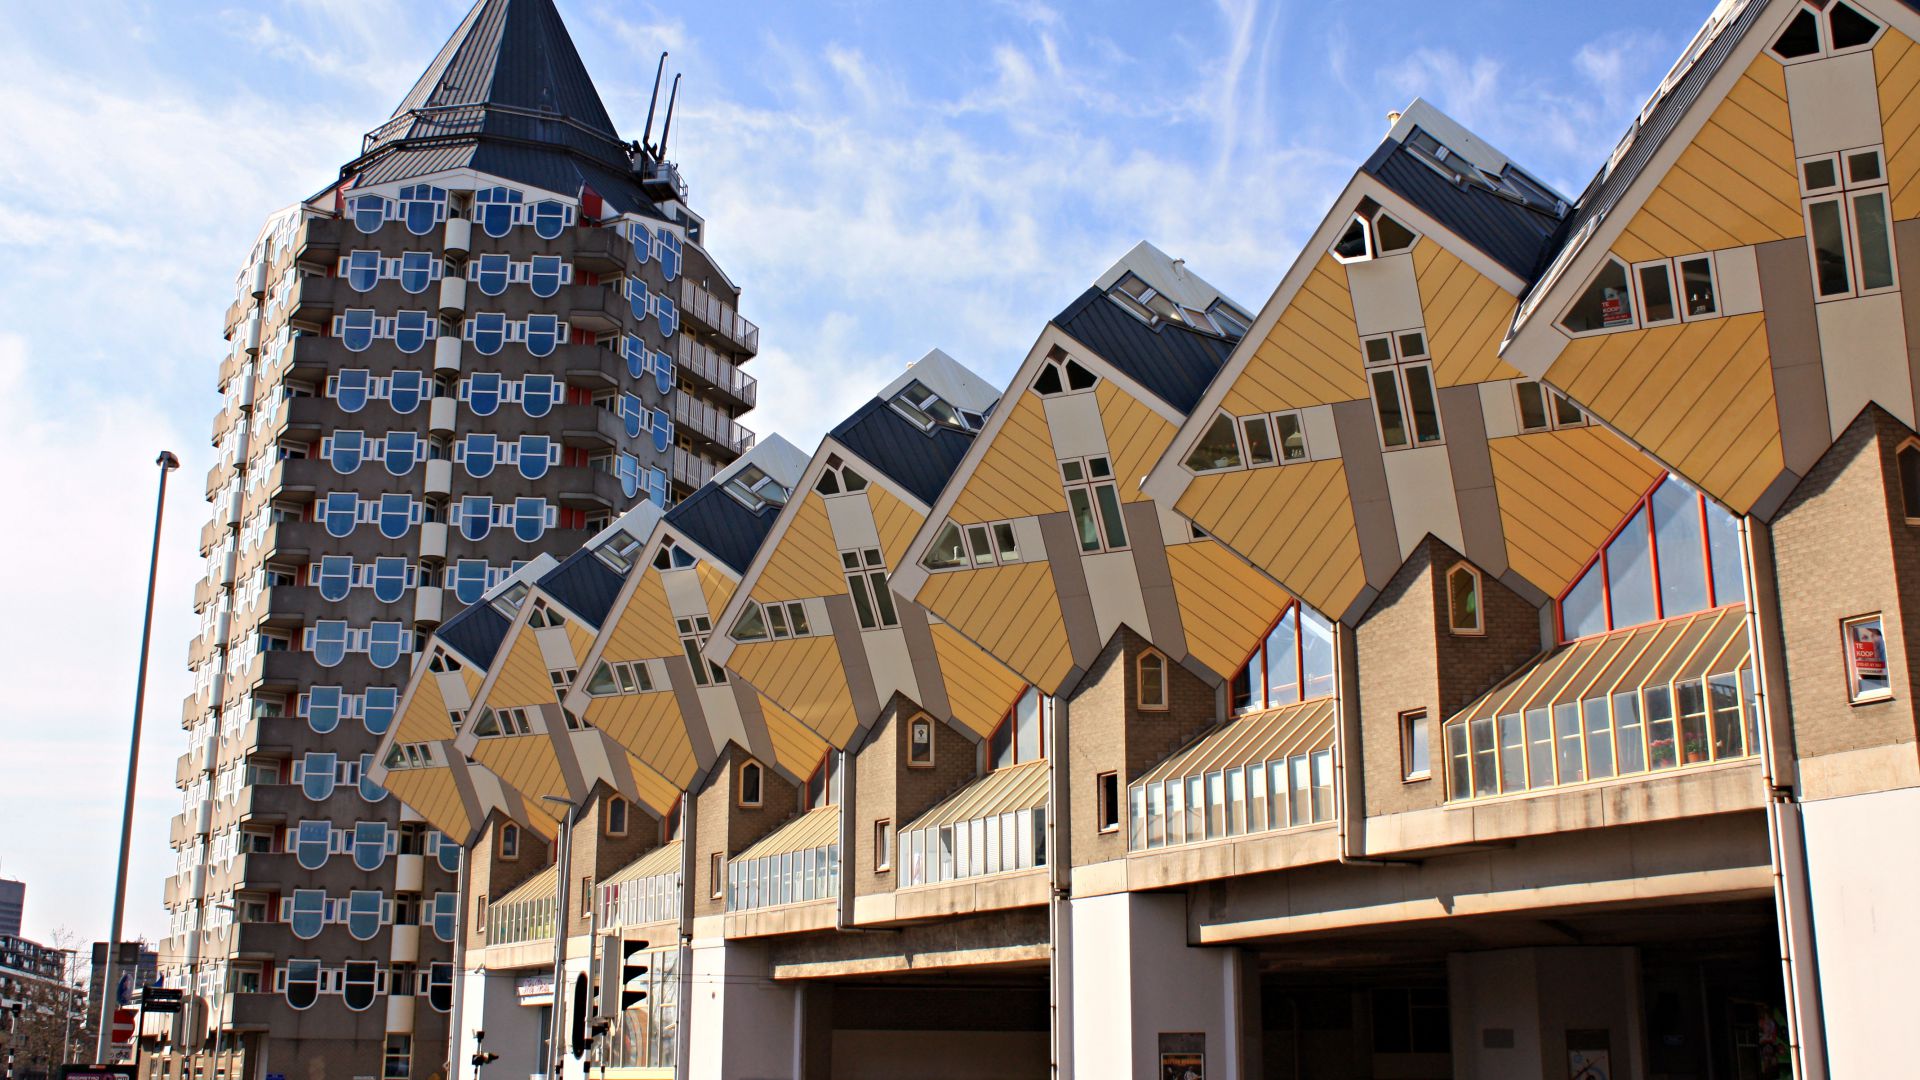 Роттердам, кубические дома, туризм, Rotterdam, Cube houses, Travel (horizontal)